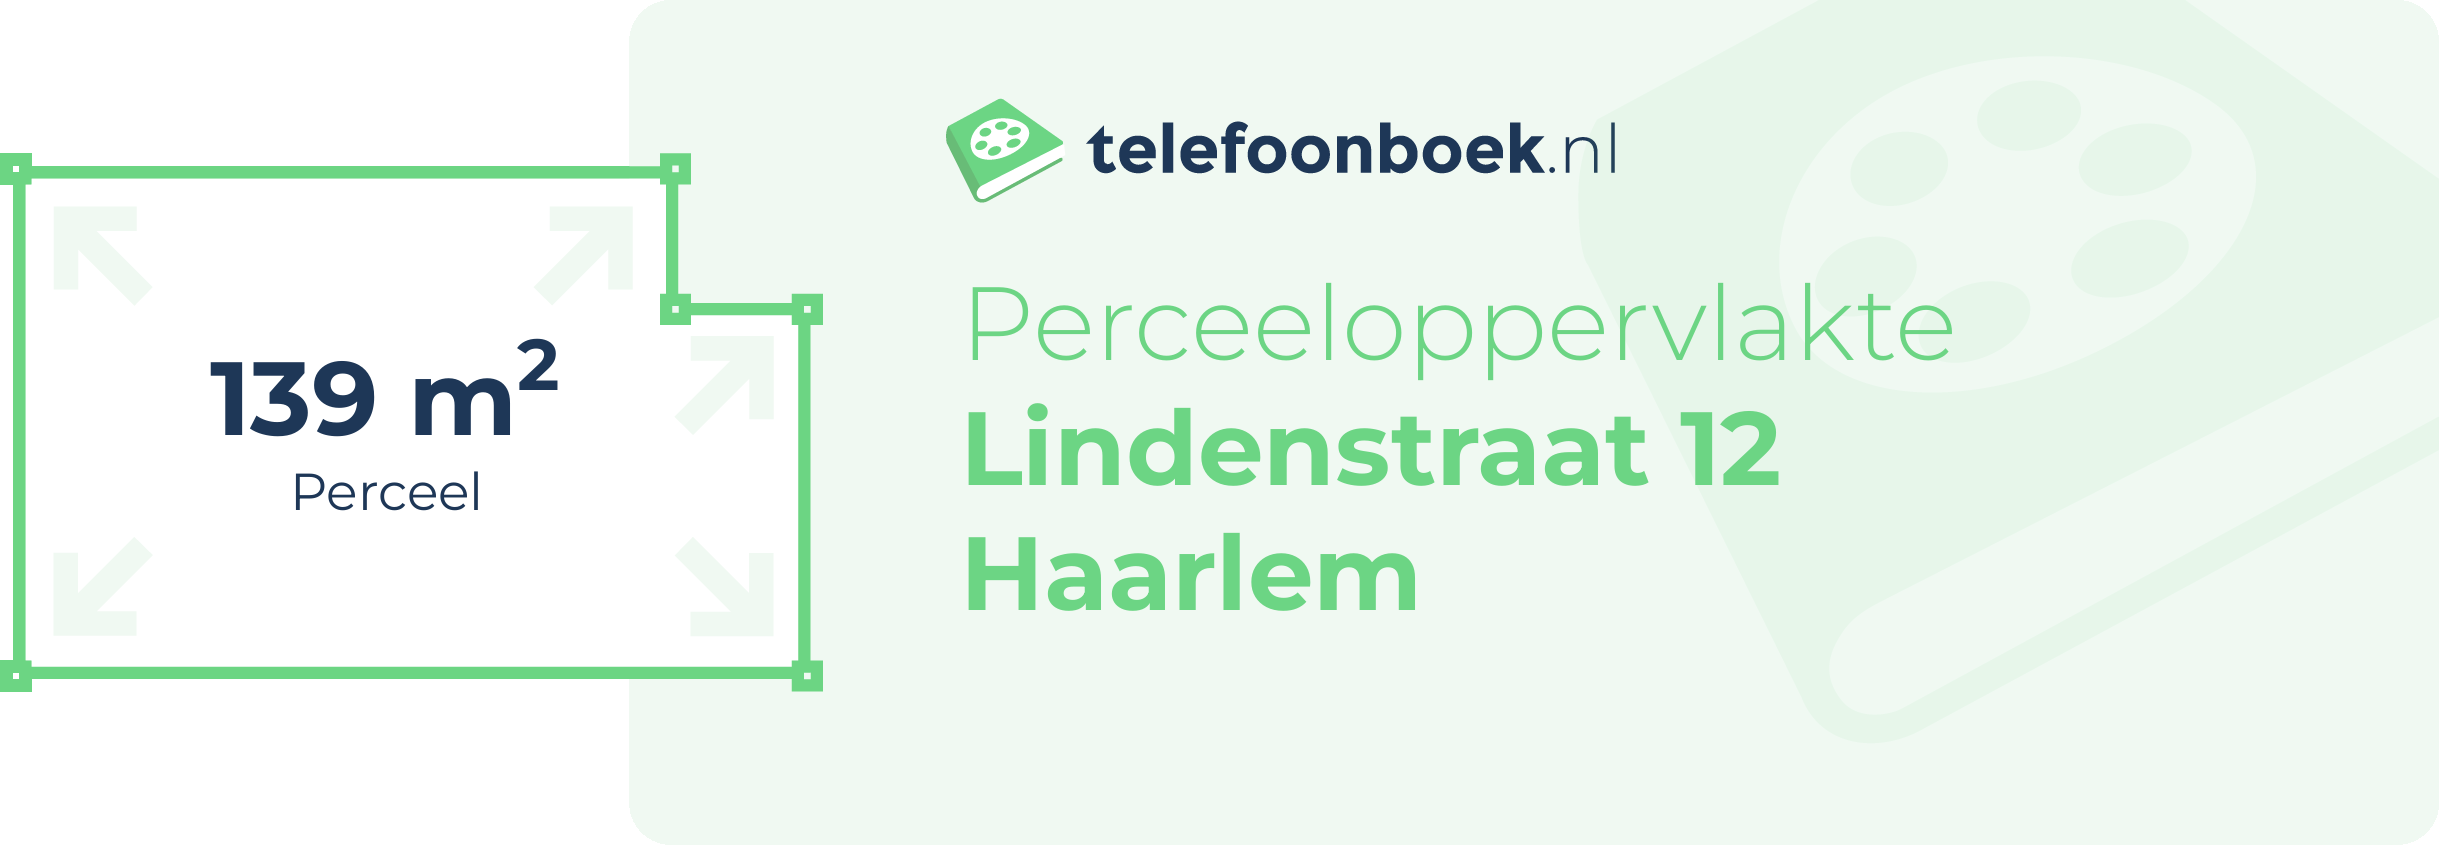 Perceeloppervlakte Lindenstraat 12 Haarlem